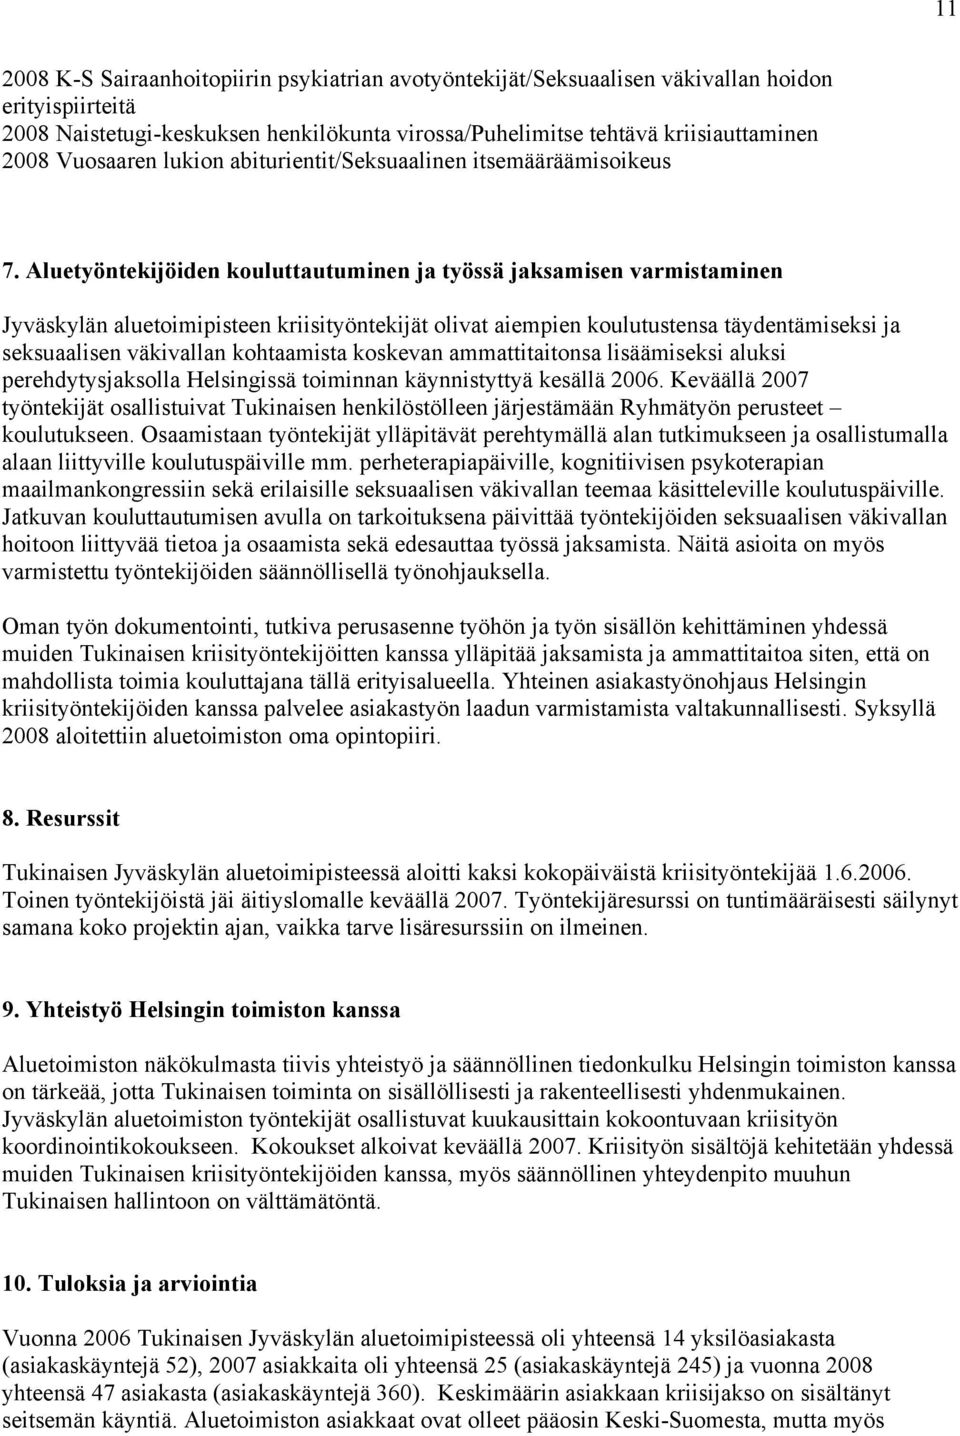 Aluetyöntekijöiden kouluttautuminen ja työssä jaksamisen varmistaminen Jyväskylän aluetoimipisteen kriisityöntekijät olivat aiempien koulutustensa täydentämiseksi ja seksuaalisen väkivallan